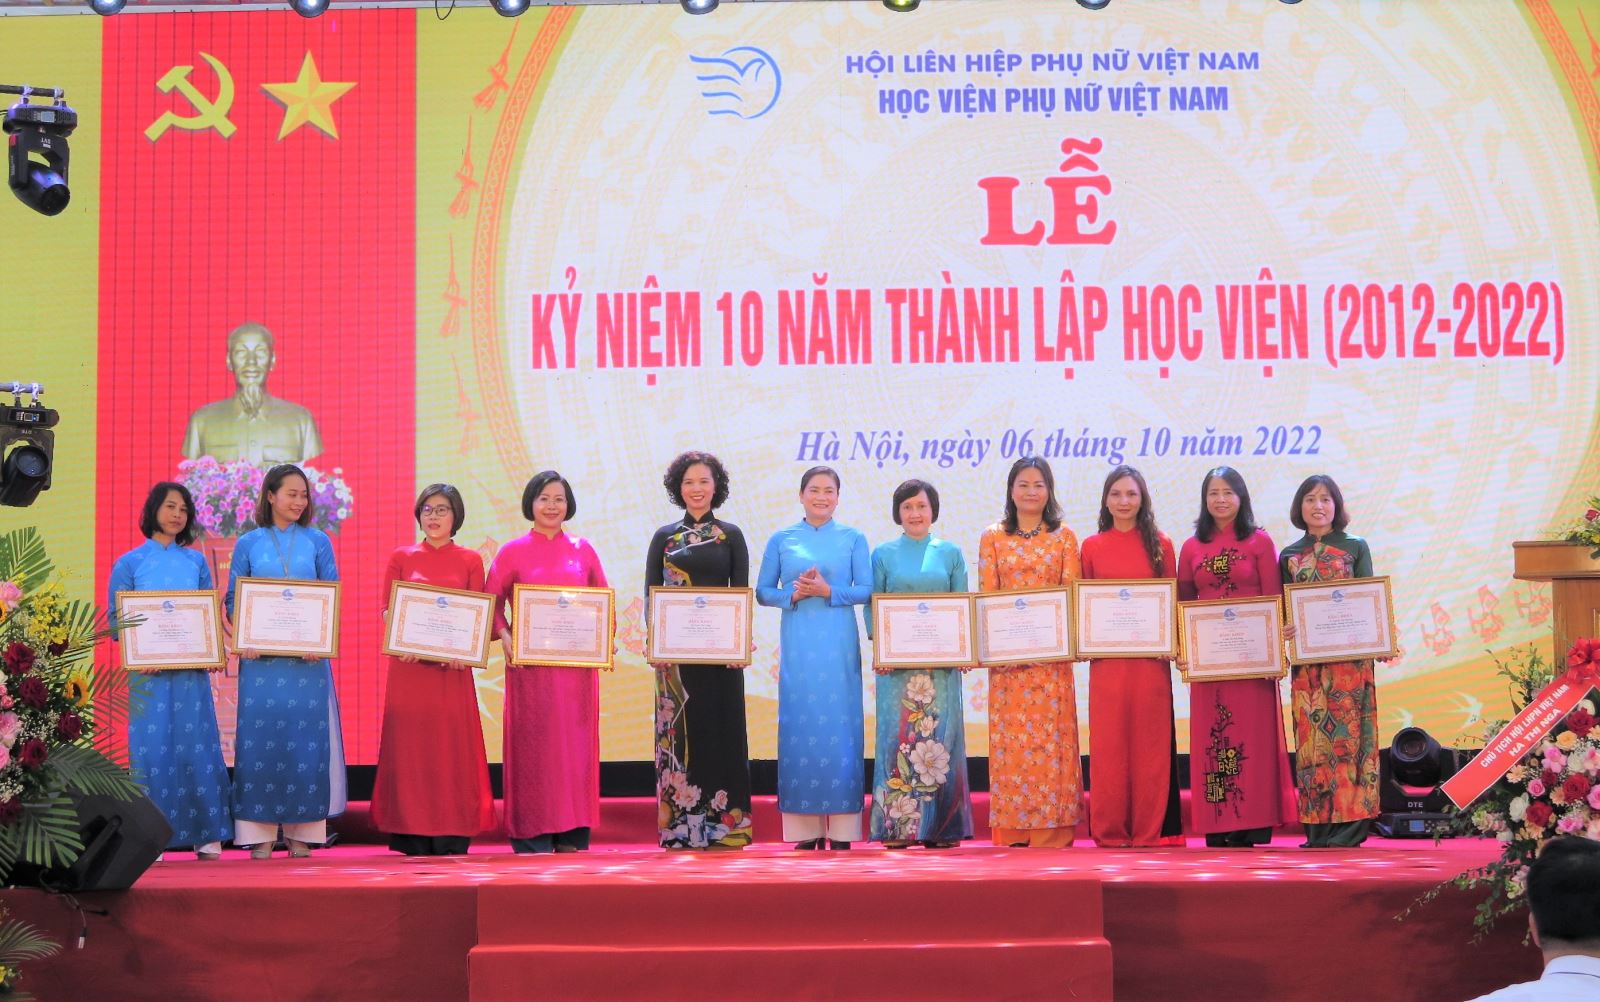 Học viện Phụ nữ Việt Nam - 10 năm thành lập, hơn 60 năm truyền thống vẻ vang (phần 1)